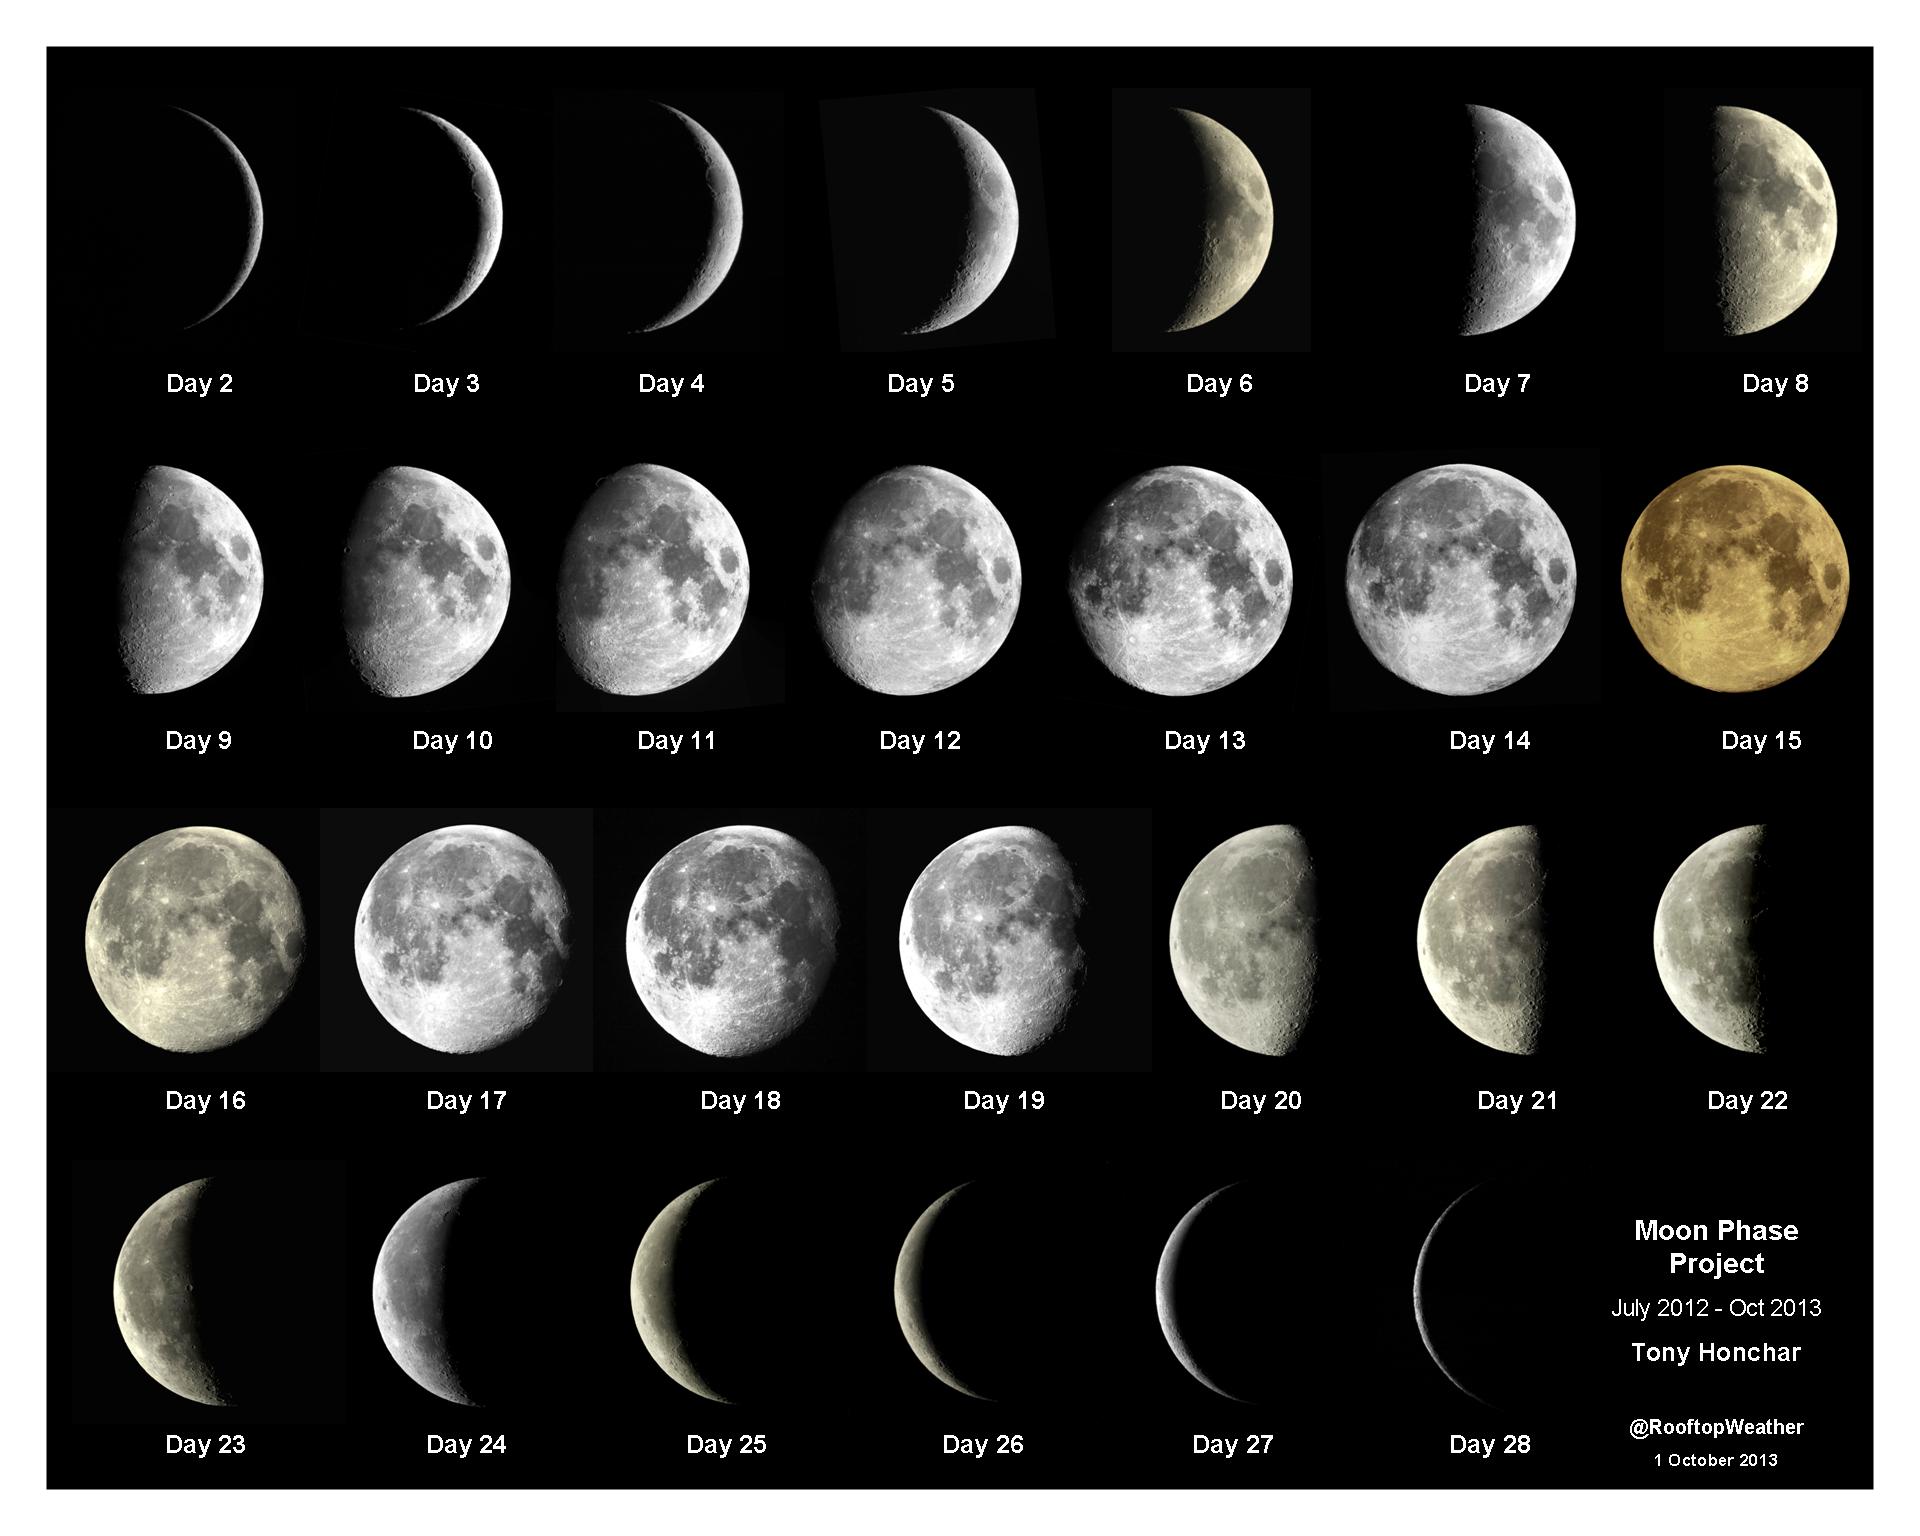 imagen que corresponde a todas las fases de la luna. Sobre fondo negro hay diferentes fotografías de la luna desde que se ve completa hasta que desaparece